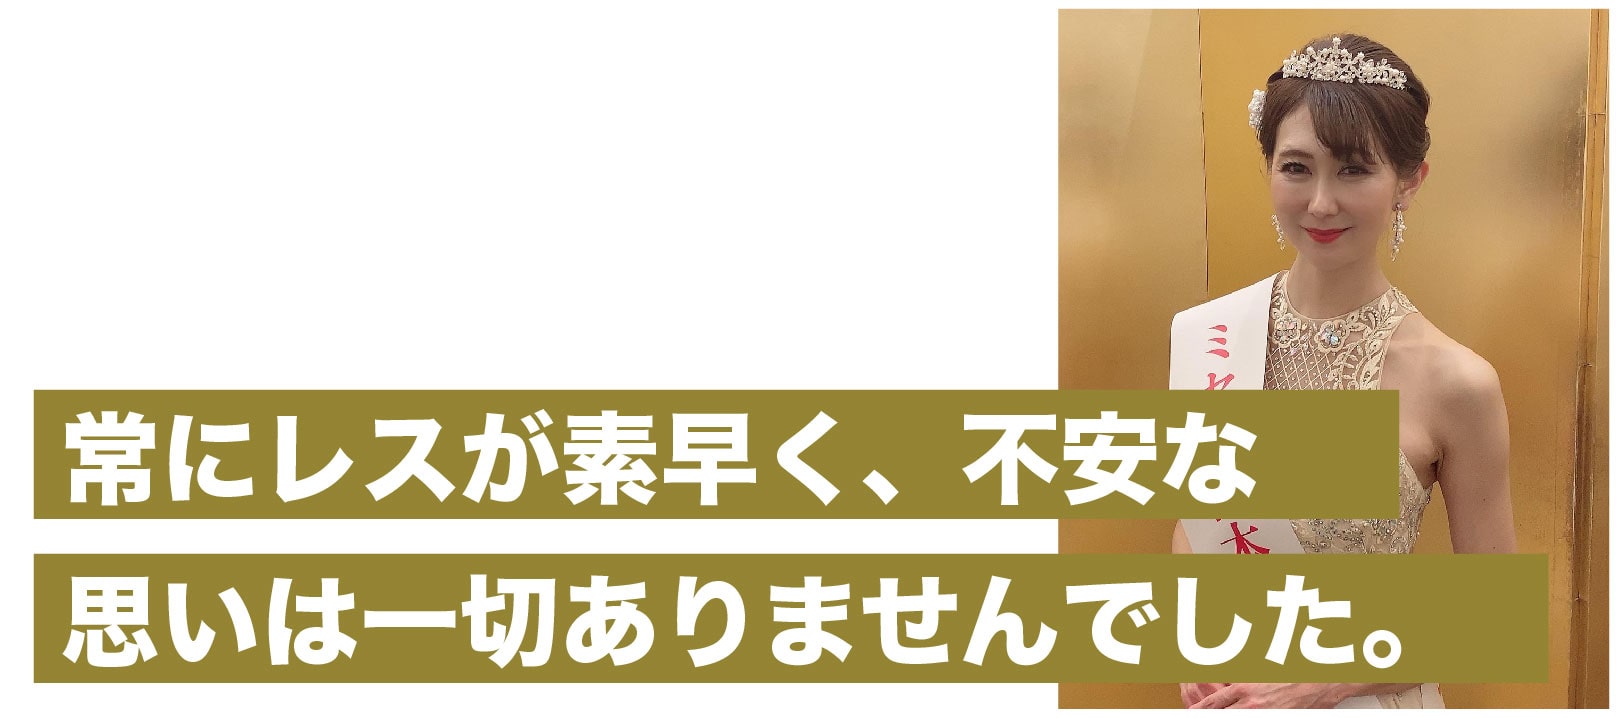 第15回ミセス日本グランプリ50代グランプリ碇涼子さん